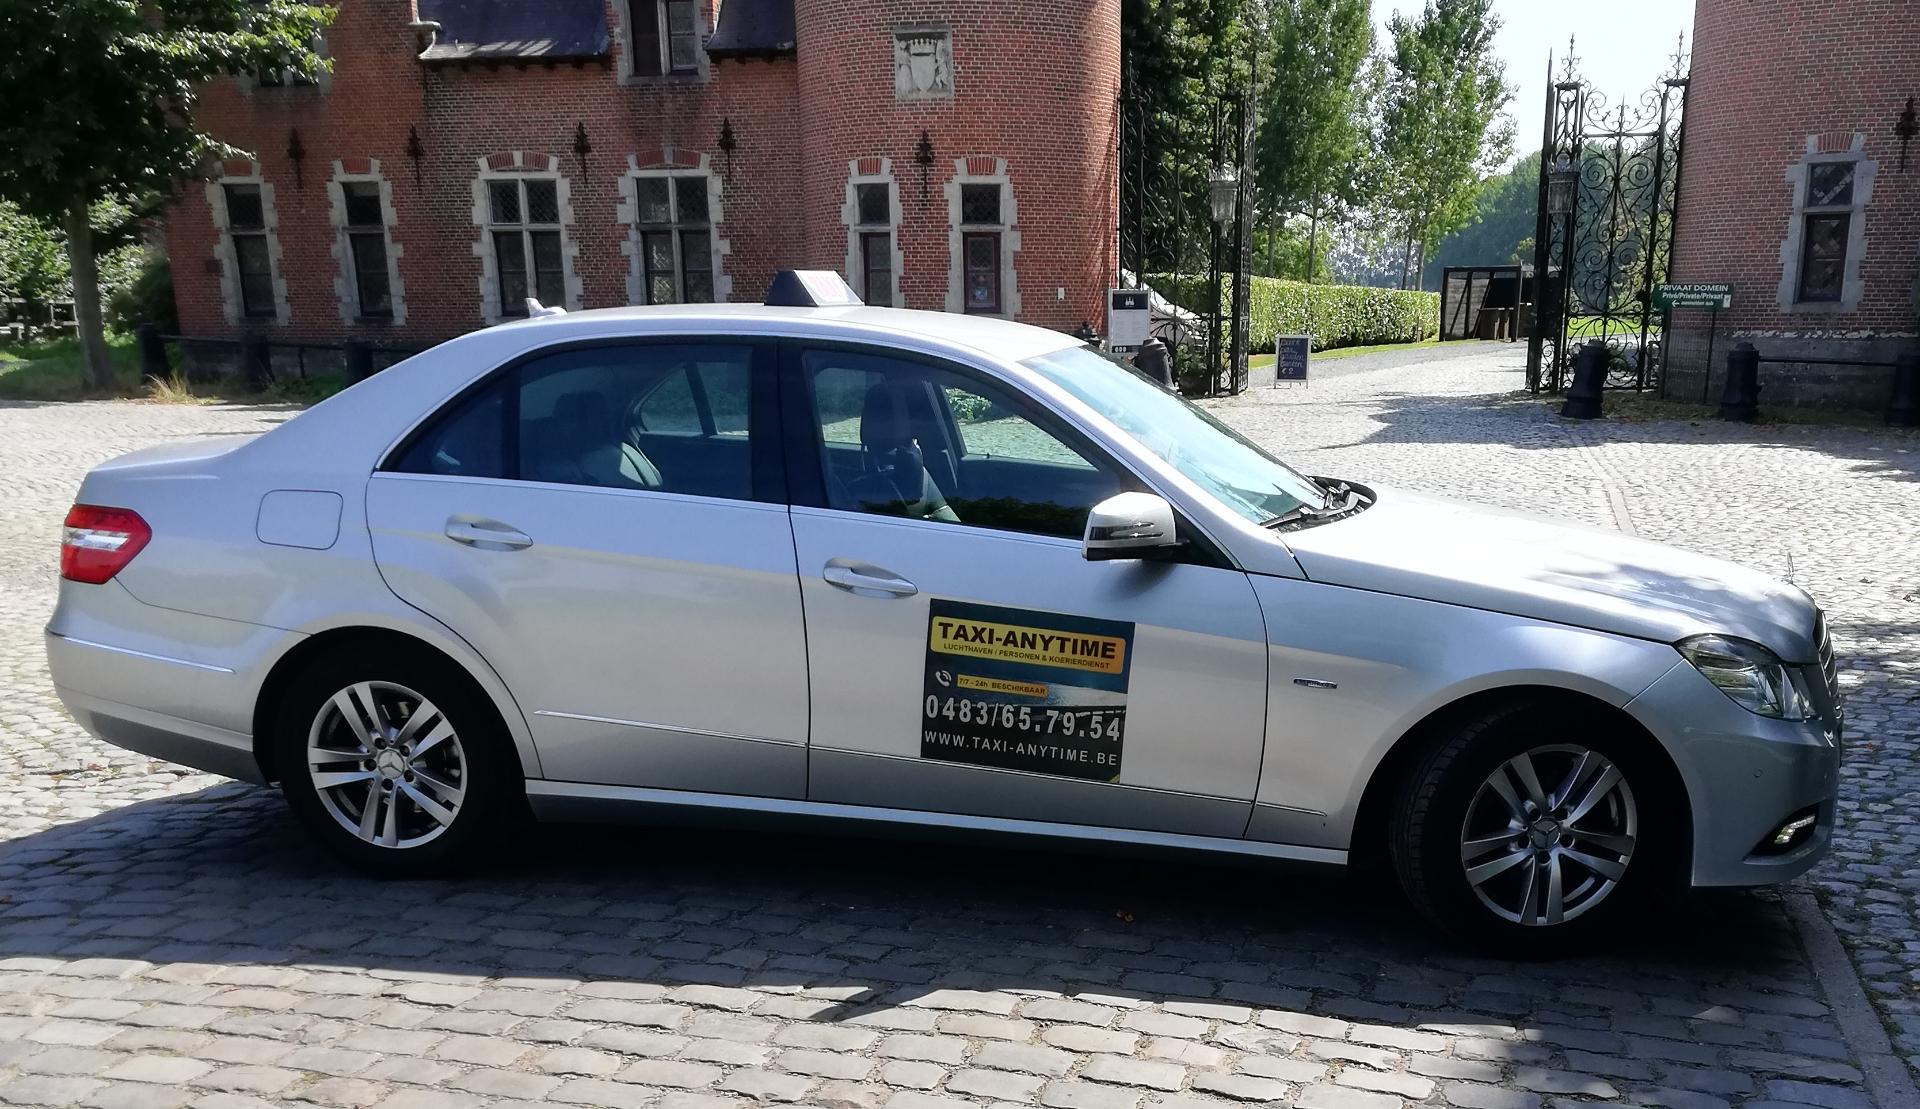 luxe-autoverhuurders Laken (Bru.) Taxi-Anytime